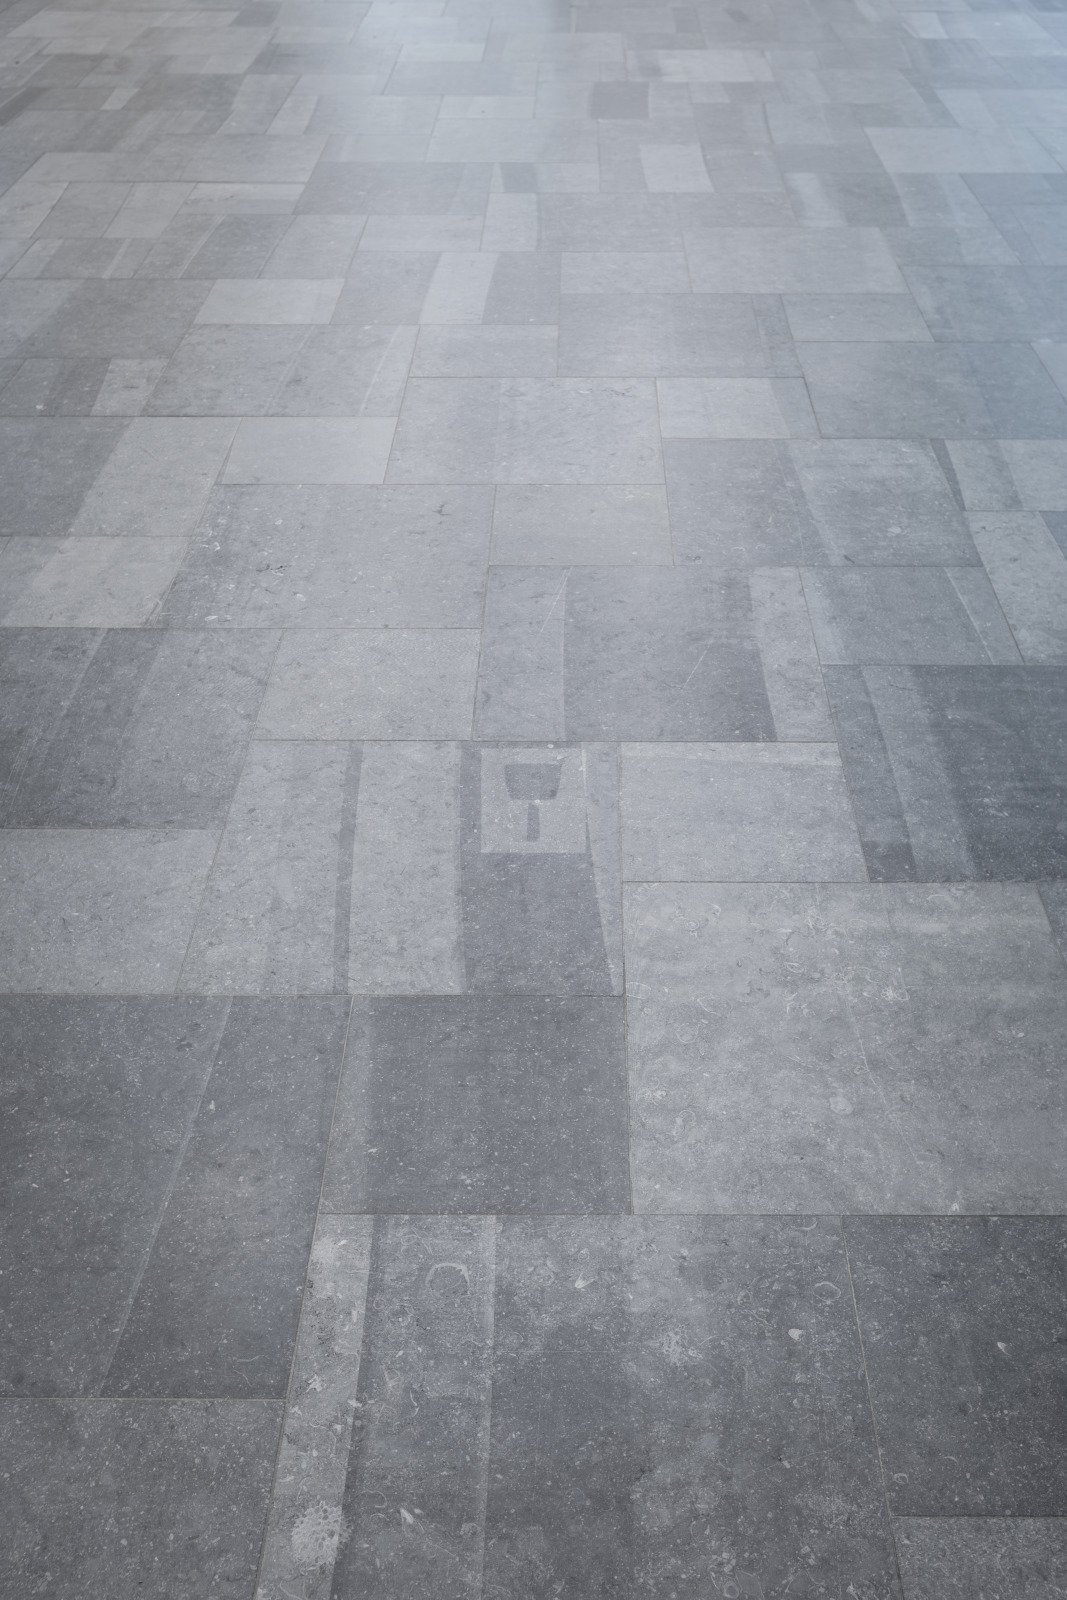 Bluestone Opus Romanum floor tiling sawn tile